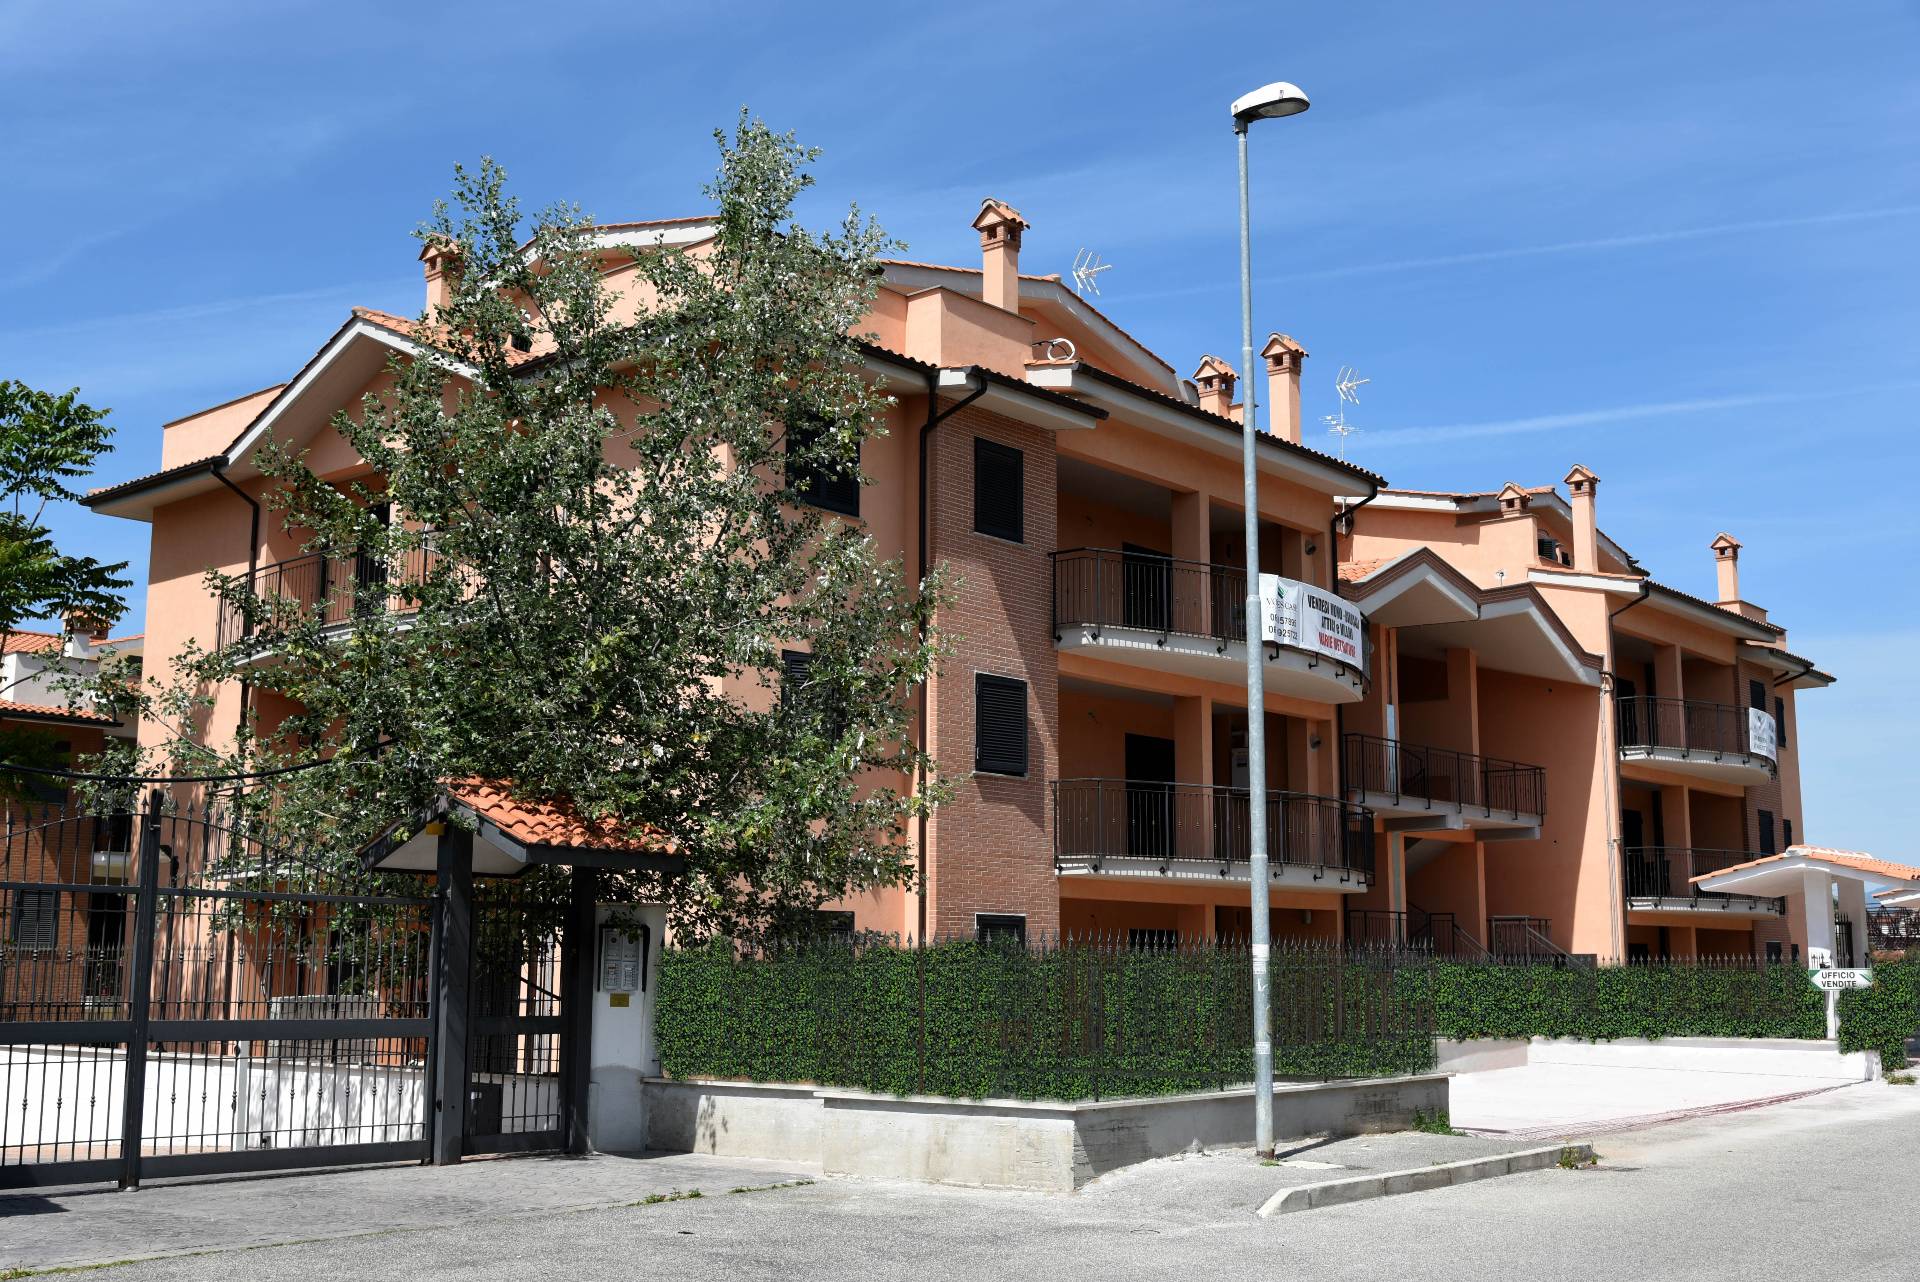 Appartamento in vendita a Fonte Nuova, 2 locali, zona Località: TorLupara, prezzo € 120.000 | CambioCasa.it